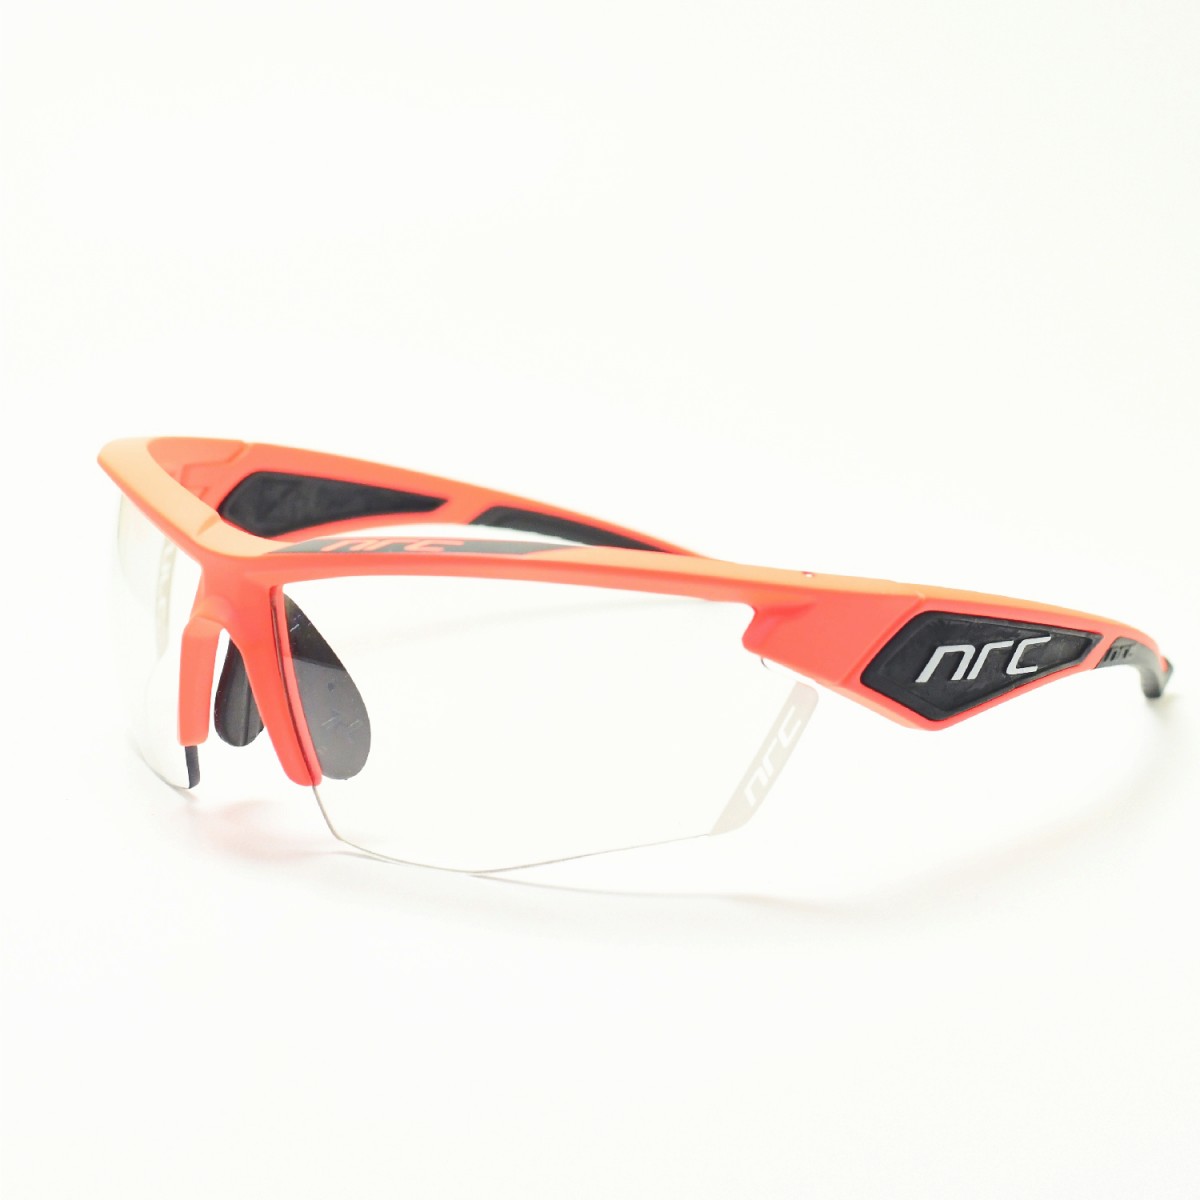 楽天市場 Nrc エヌアールシー X5sacromonre Clear Gray 調光レンズメガネ 眼鏡 めがね メンズ レディース おしゃれ ブランド人気 おすすめ フレーム 流行り 度付き レンズ サングラス デコリンメガネ